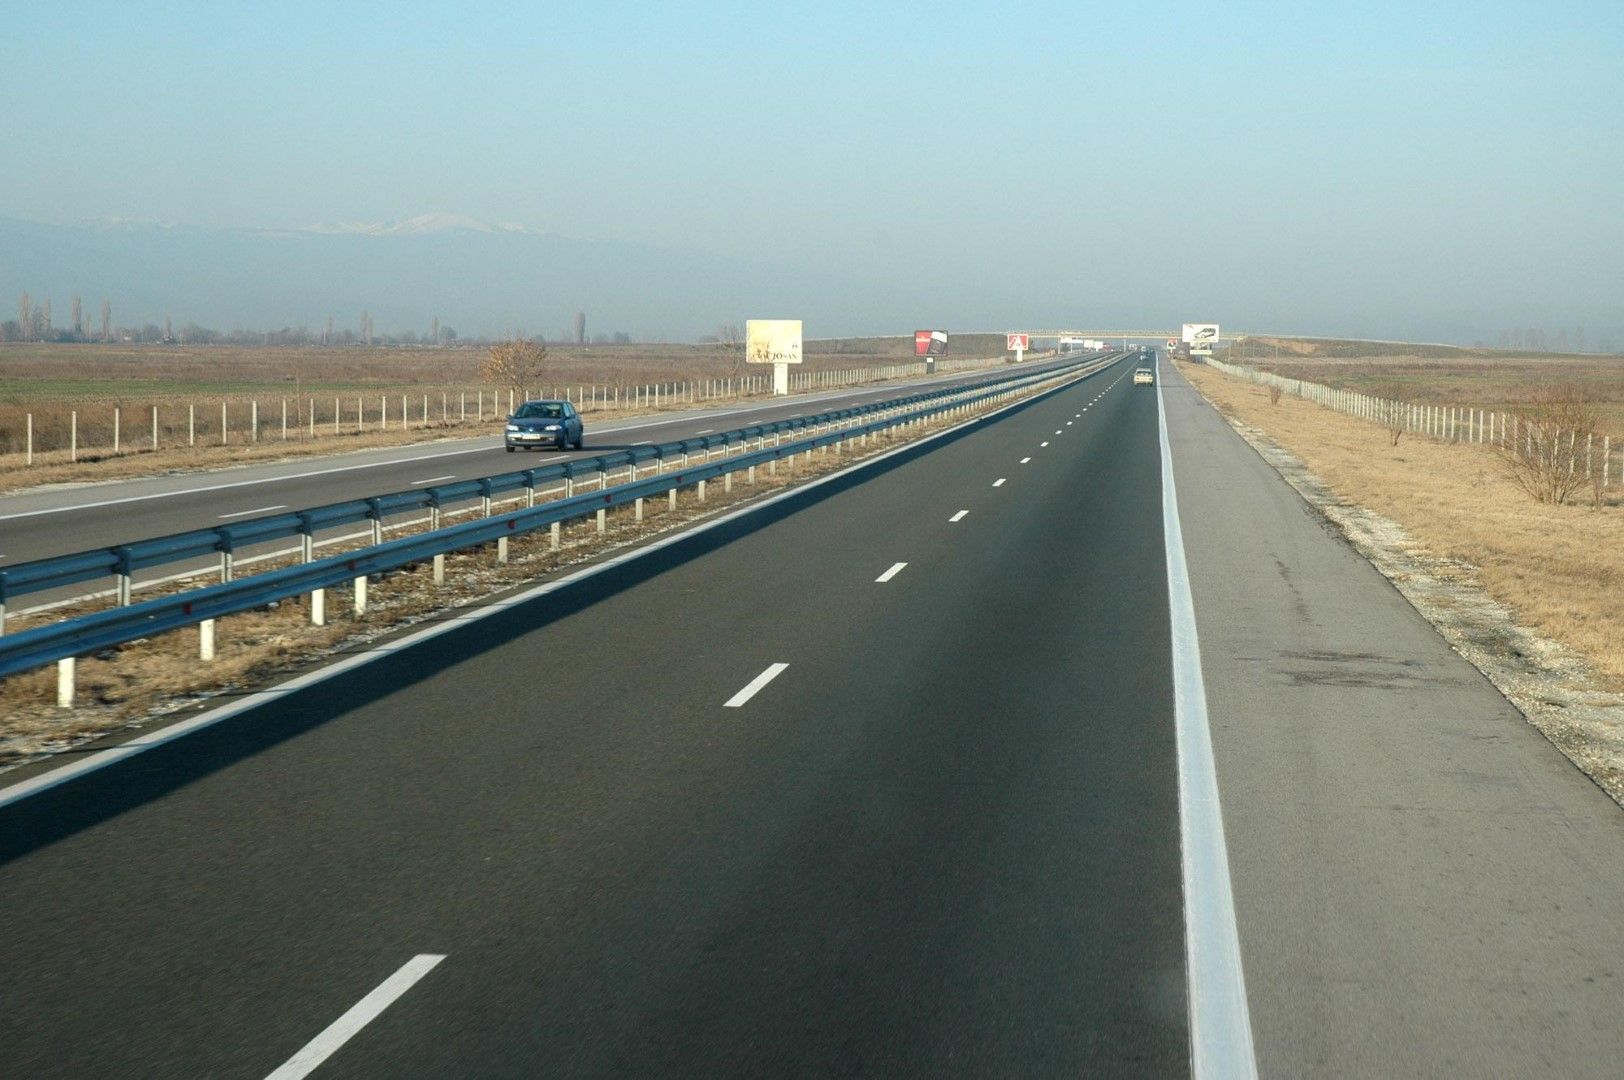 Румънците имат 777 километра магистрали и се оплакват, какво да кажем ние с 360 км завършена магистрала София-Бургас